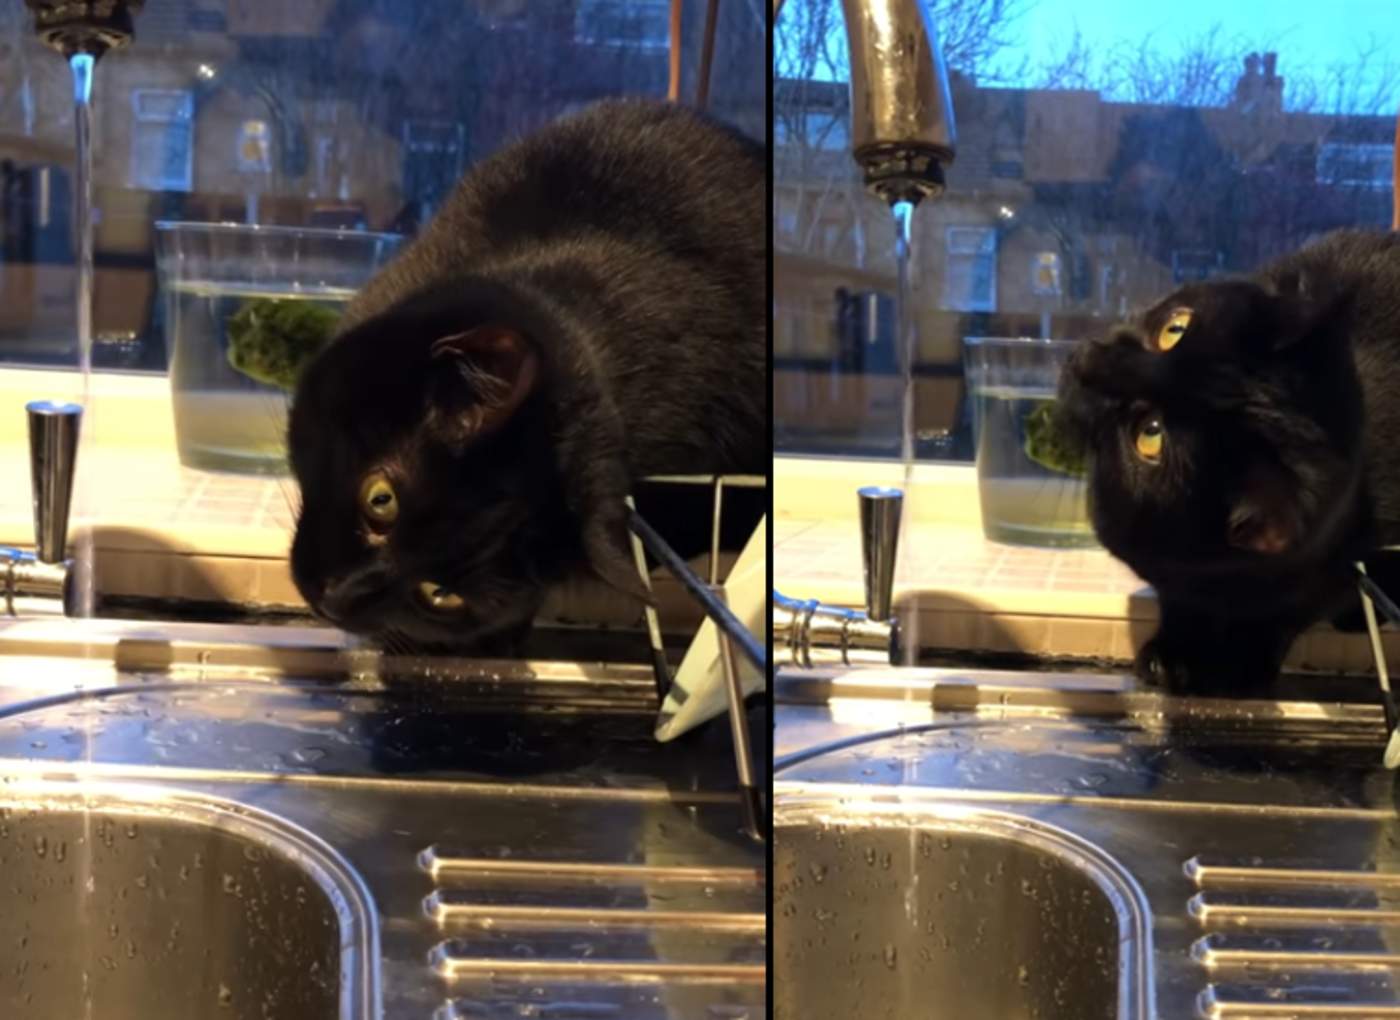 Encantador gato fascinado por el agua del grifo